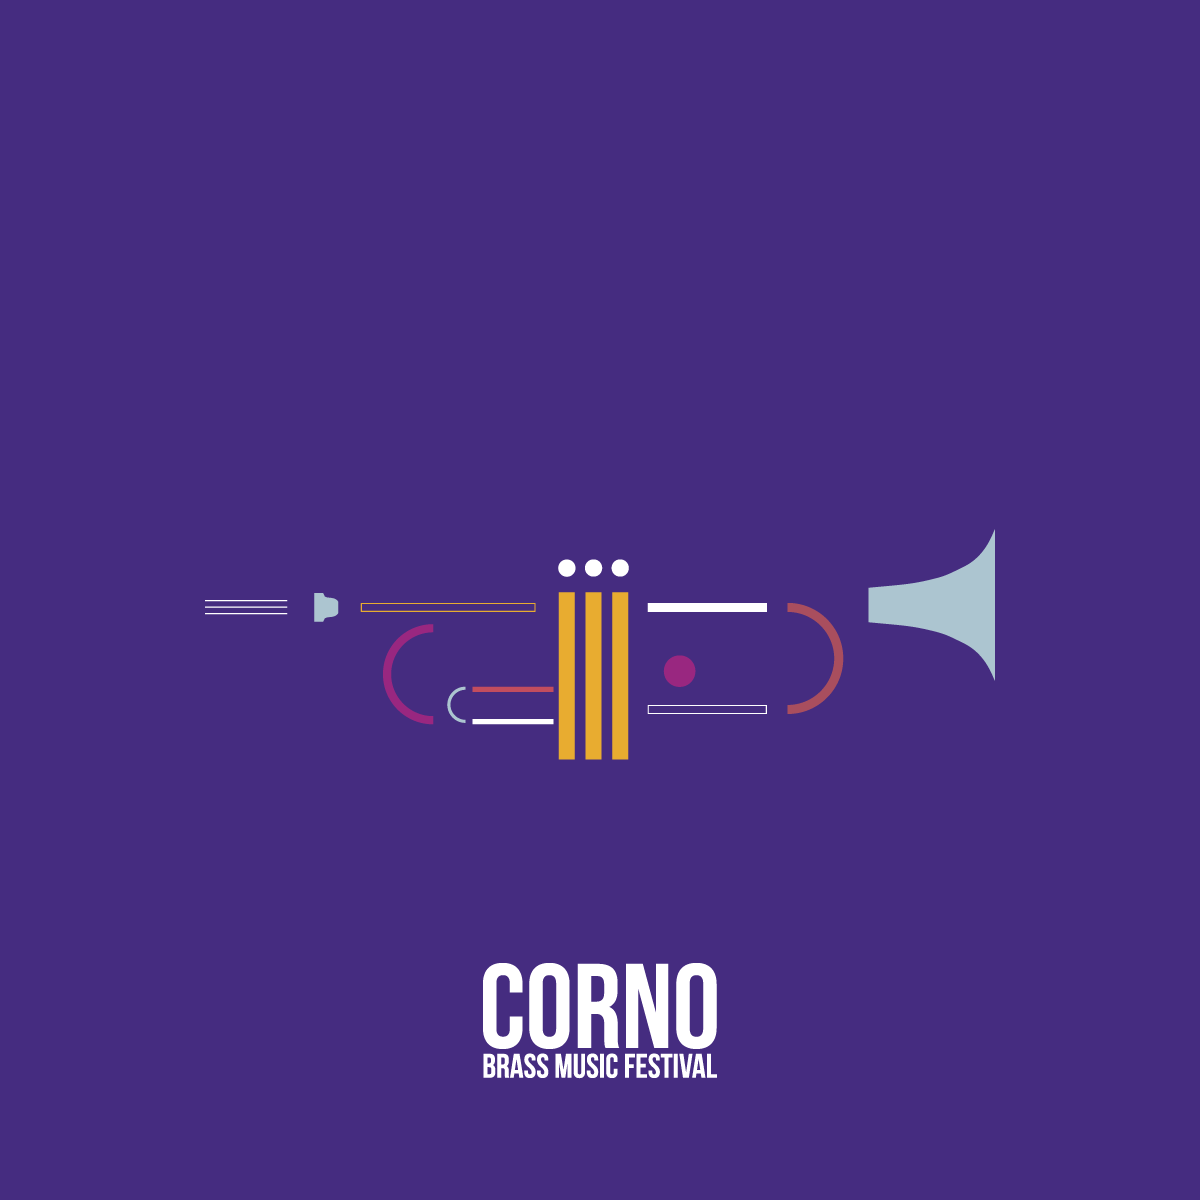 Corno Brass Music Festival